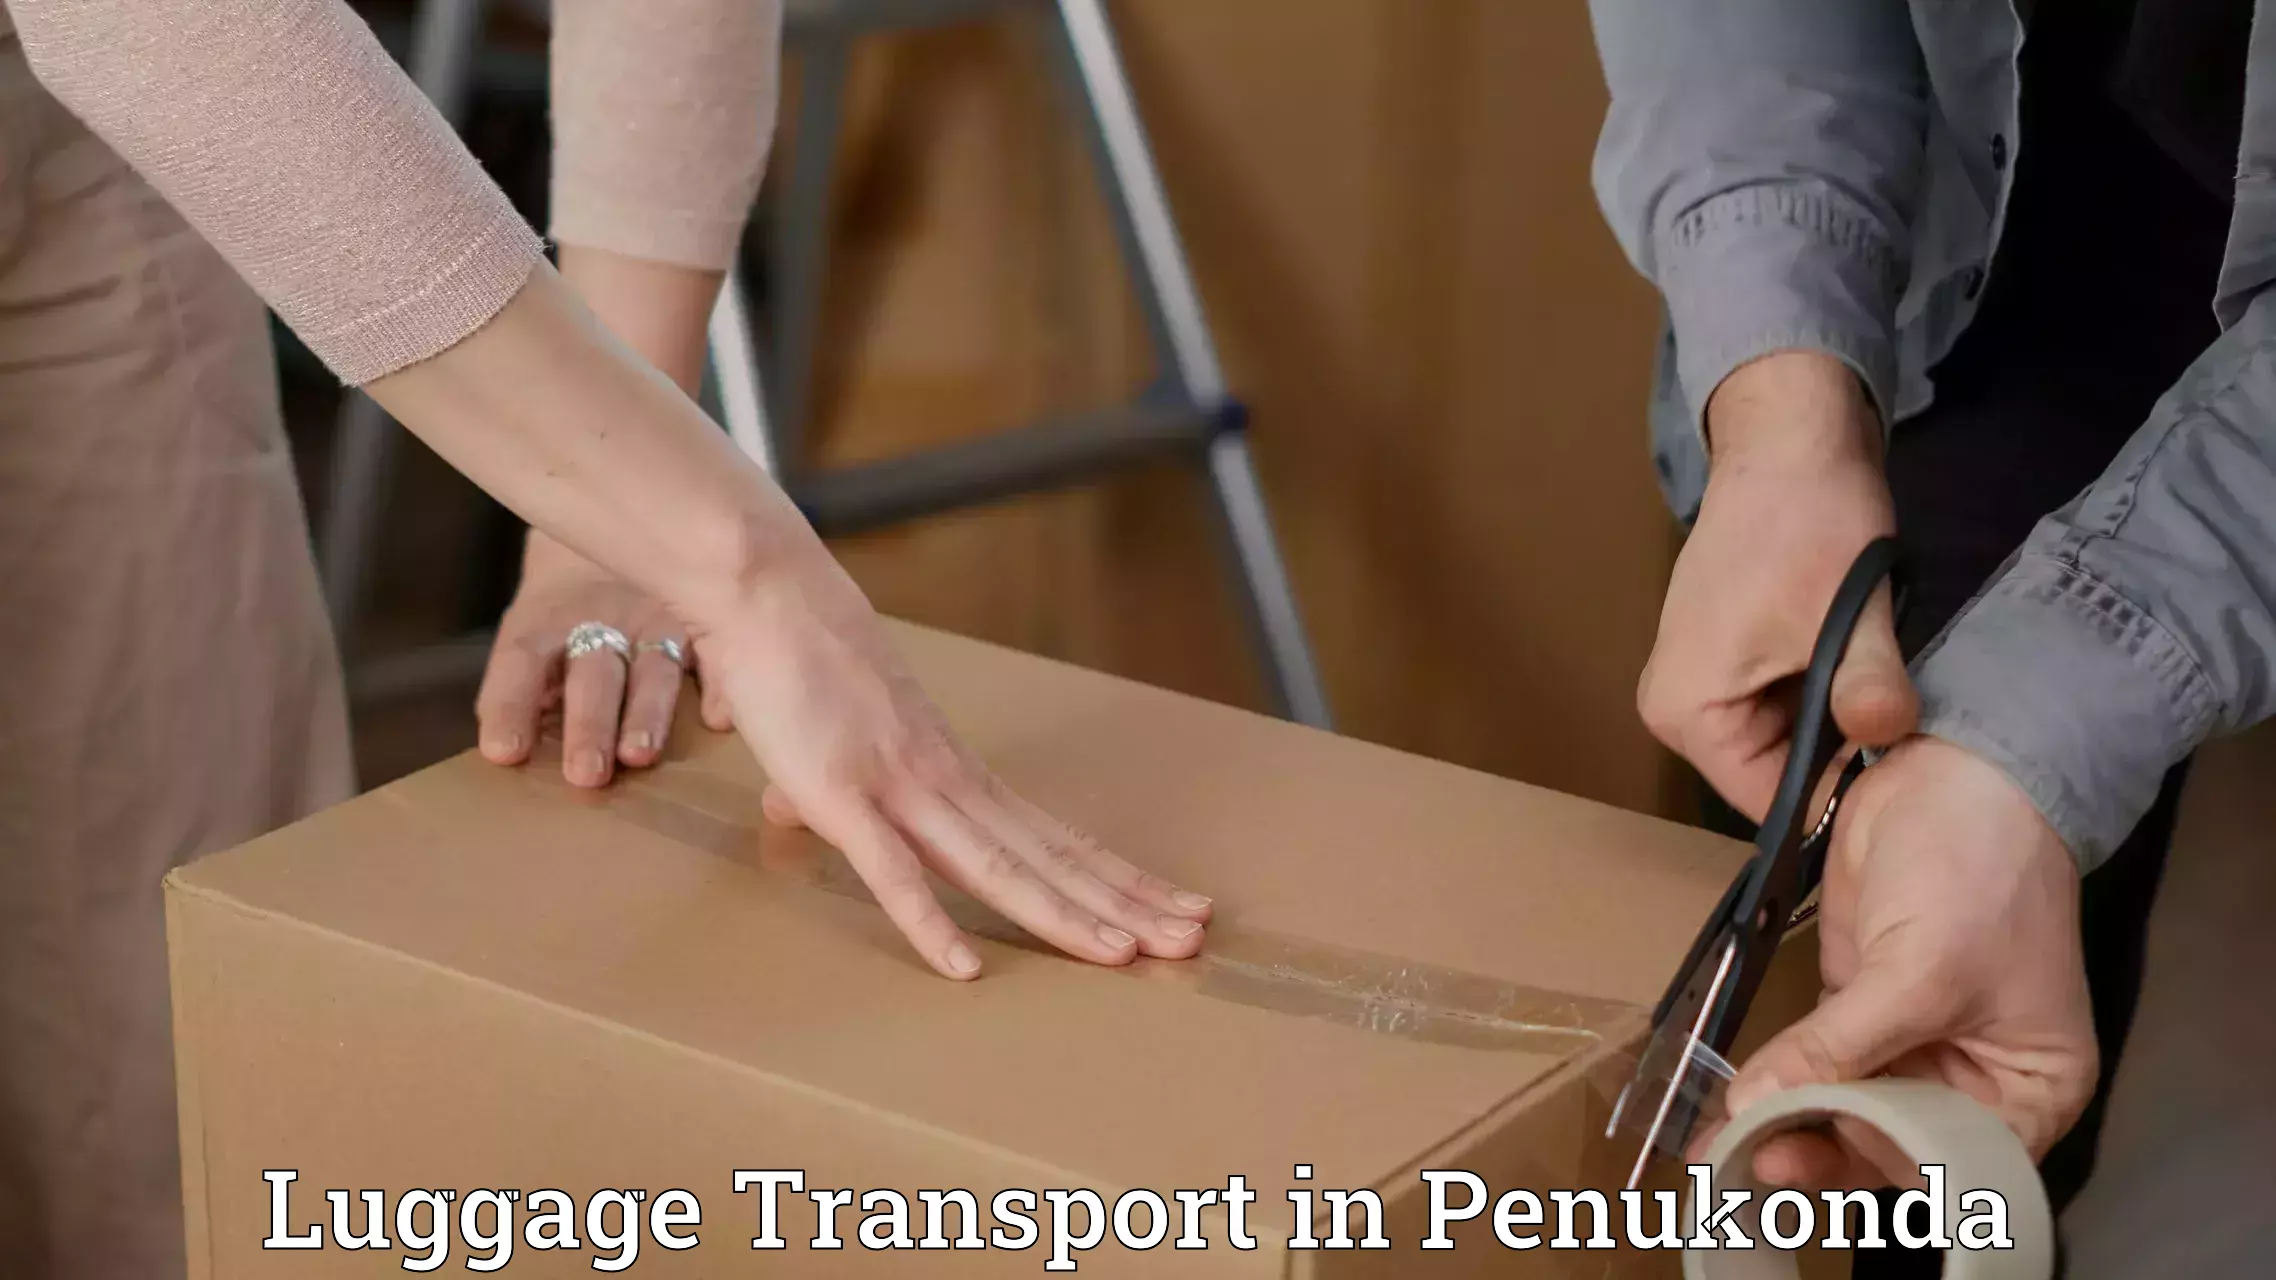 Instant baggage transport quote in Penukonda